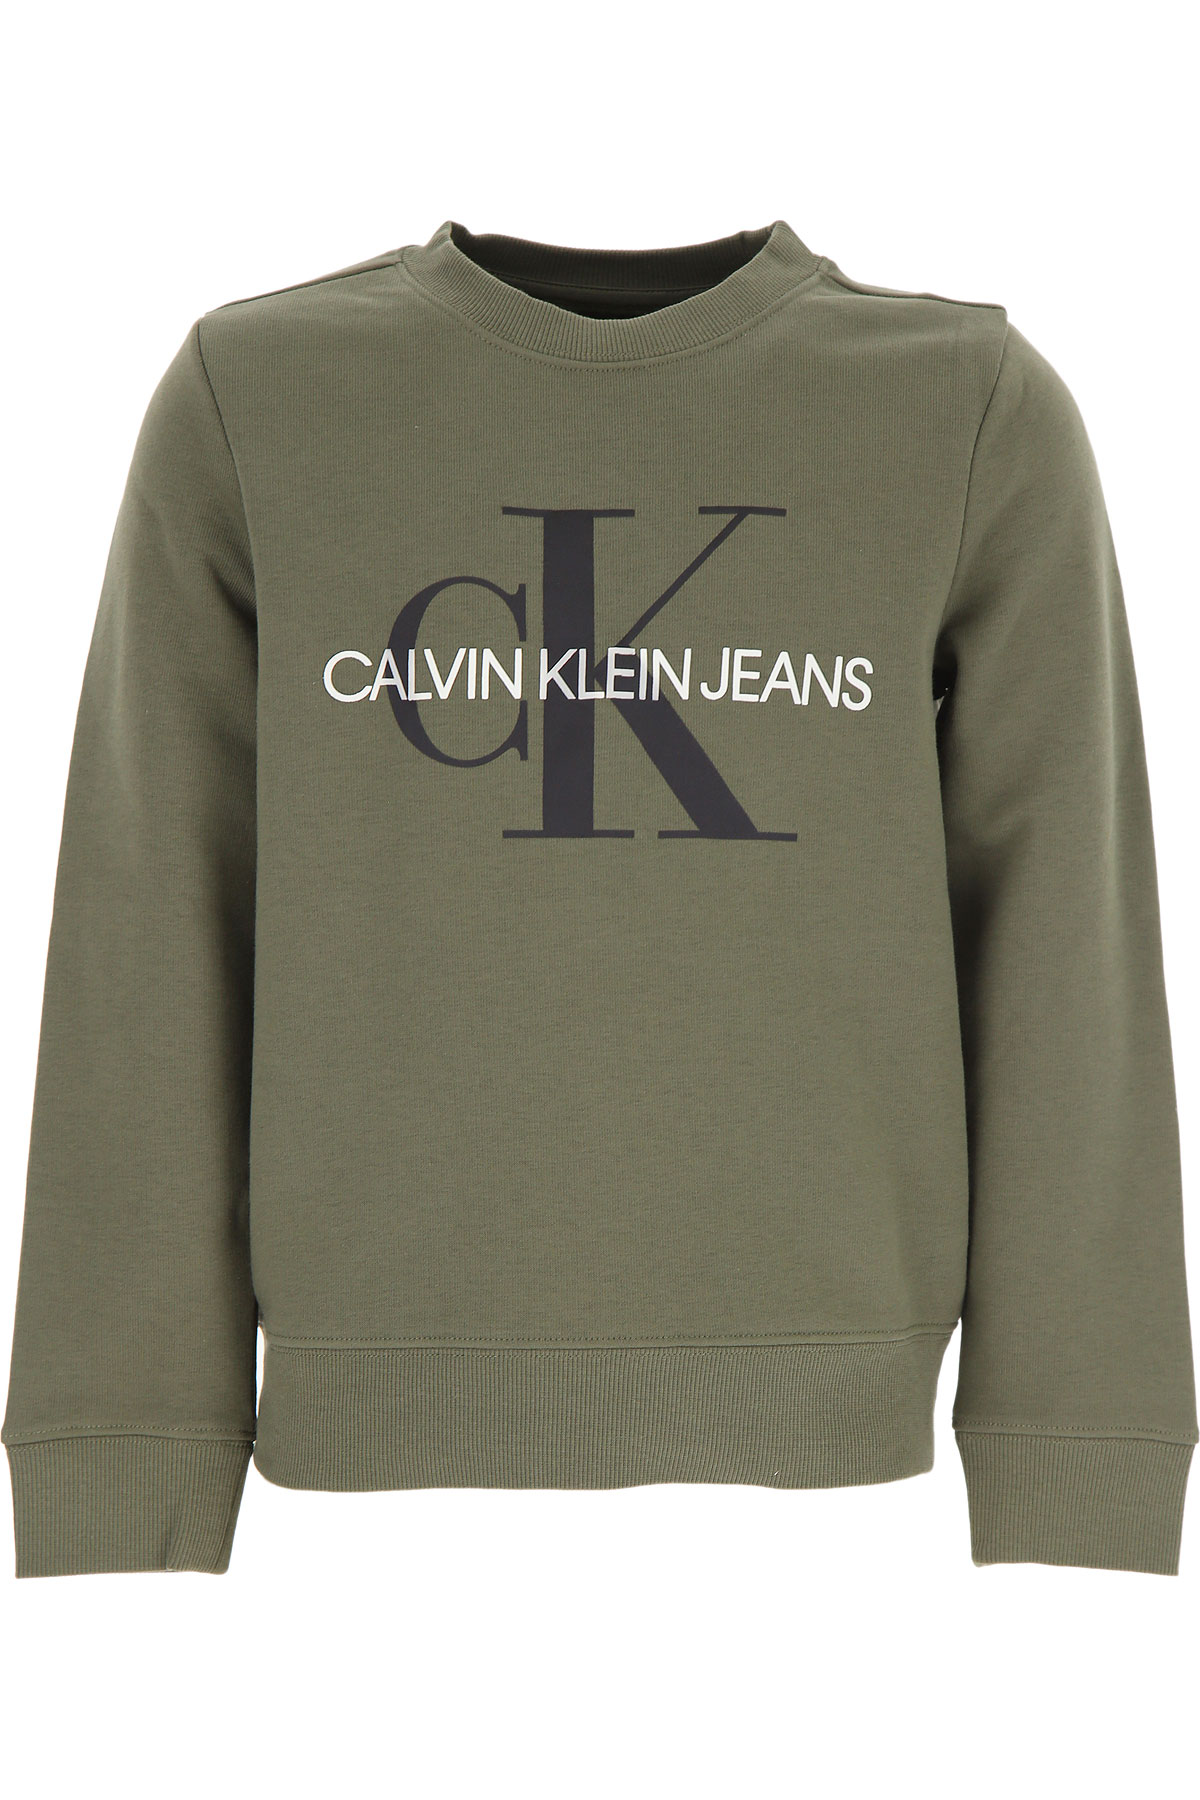 Calvin Klein Kinder Sweatshirt & Kapuzenpullover für Jungen Günstig im Sale, Trauben Blatt, Baumwolle, 2017, 10Y 12Y 14Y 8Y